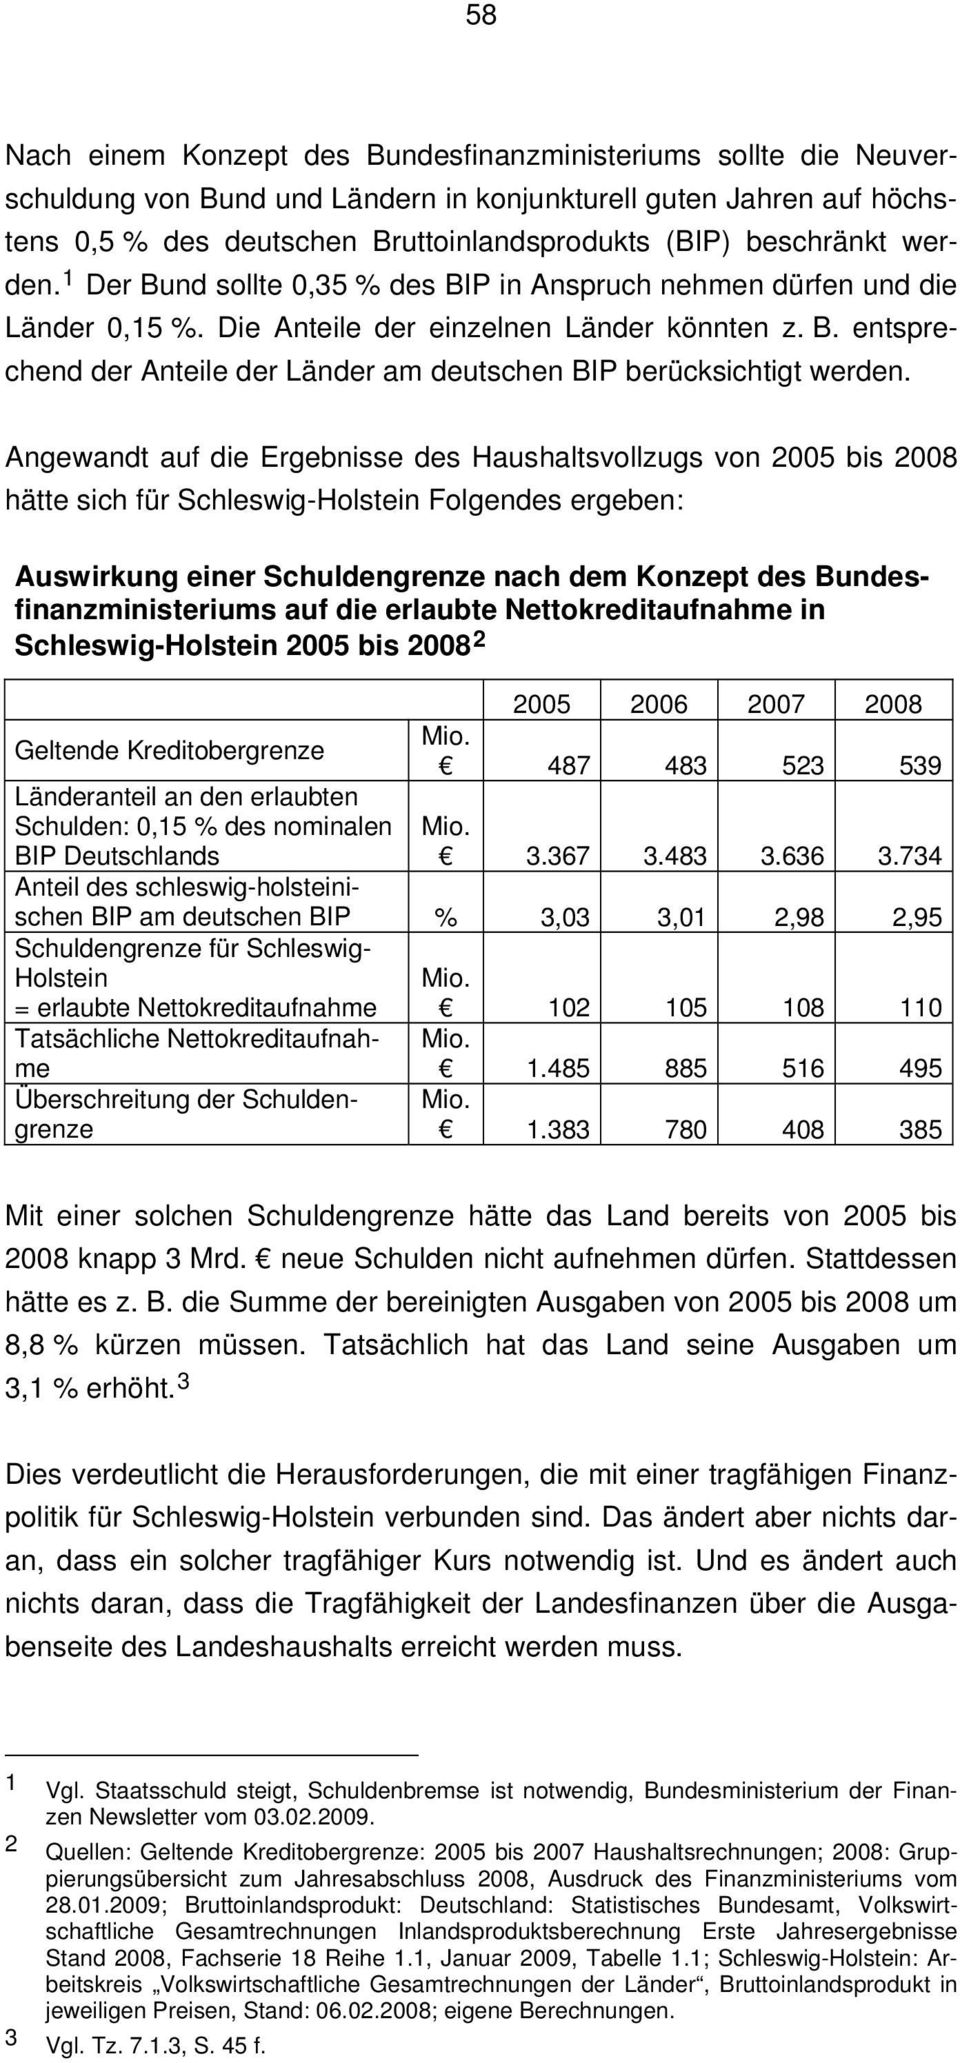 Angewandt auf die Ergebnisse des Haushaltsvollzugs von 2005 bis 2008 hätte sich für Schleswig-Holstein Folgendes ergeben: Auswirkung einer Schuldengrenze nach dem Konzept des Bundesfinanzministeriums